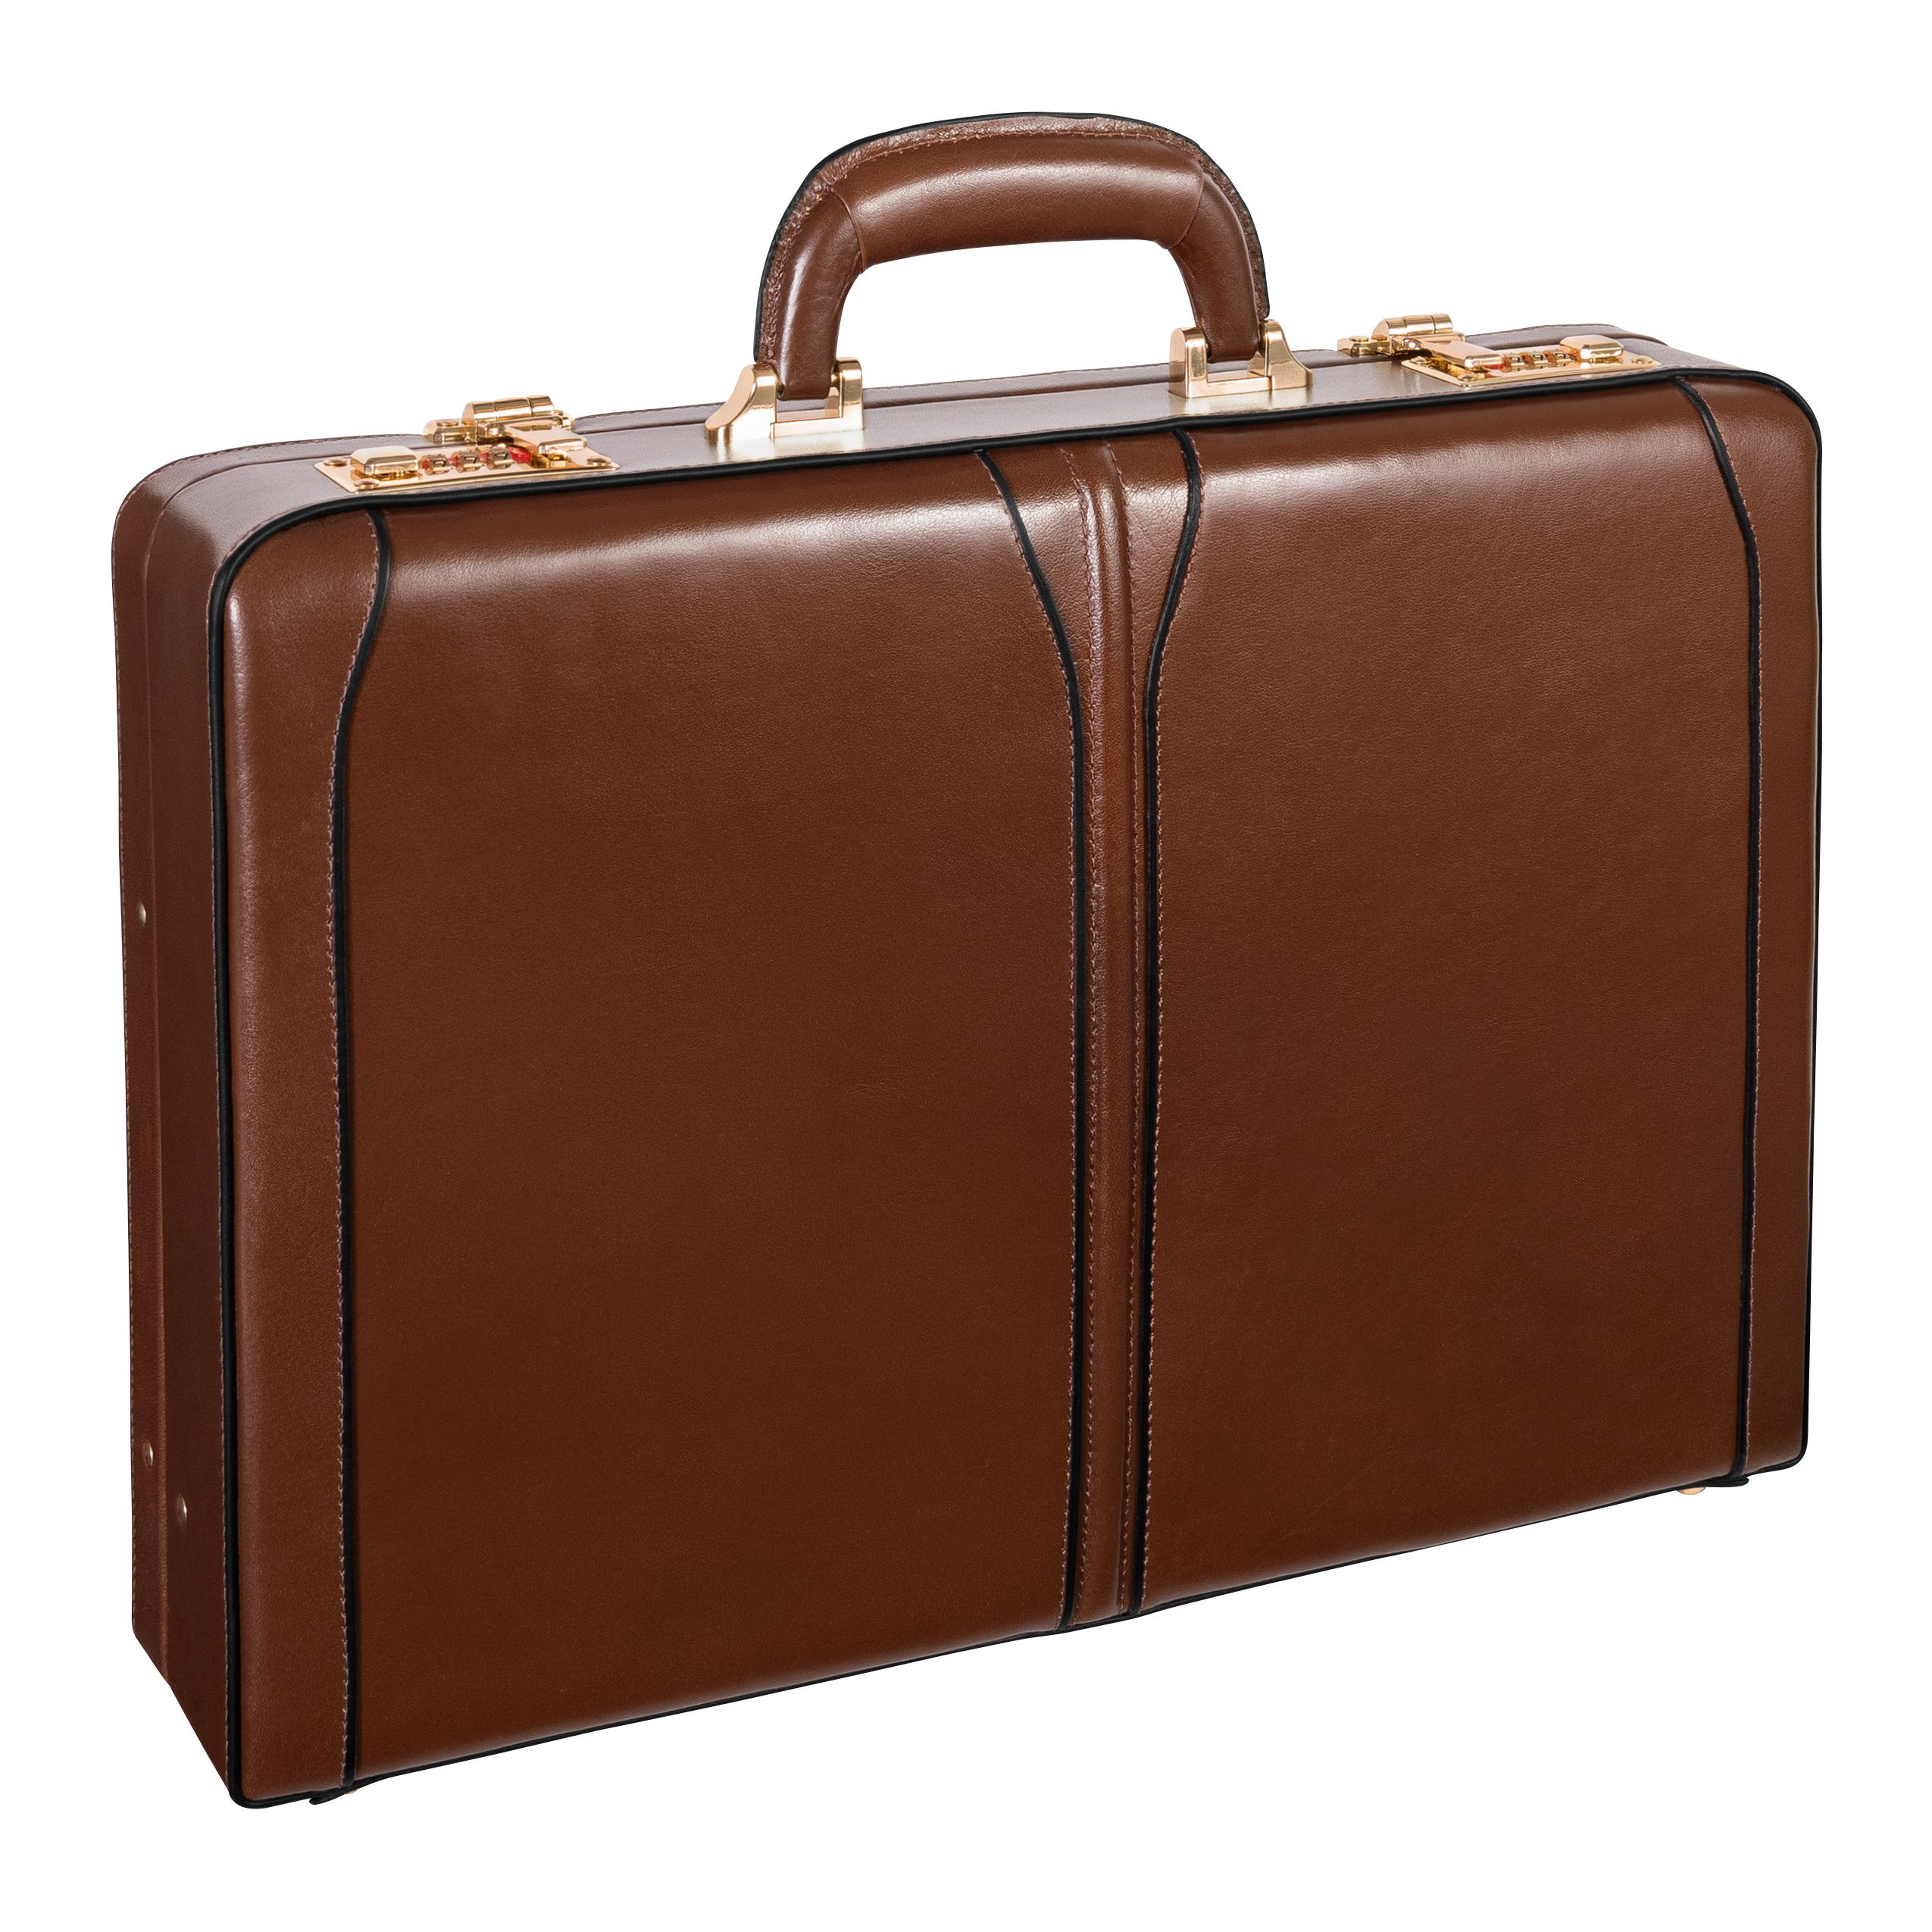 Picture of McKlein 80454 Lawson 80454- Brown Leather Attache Case